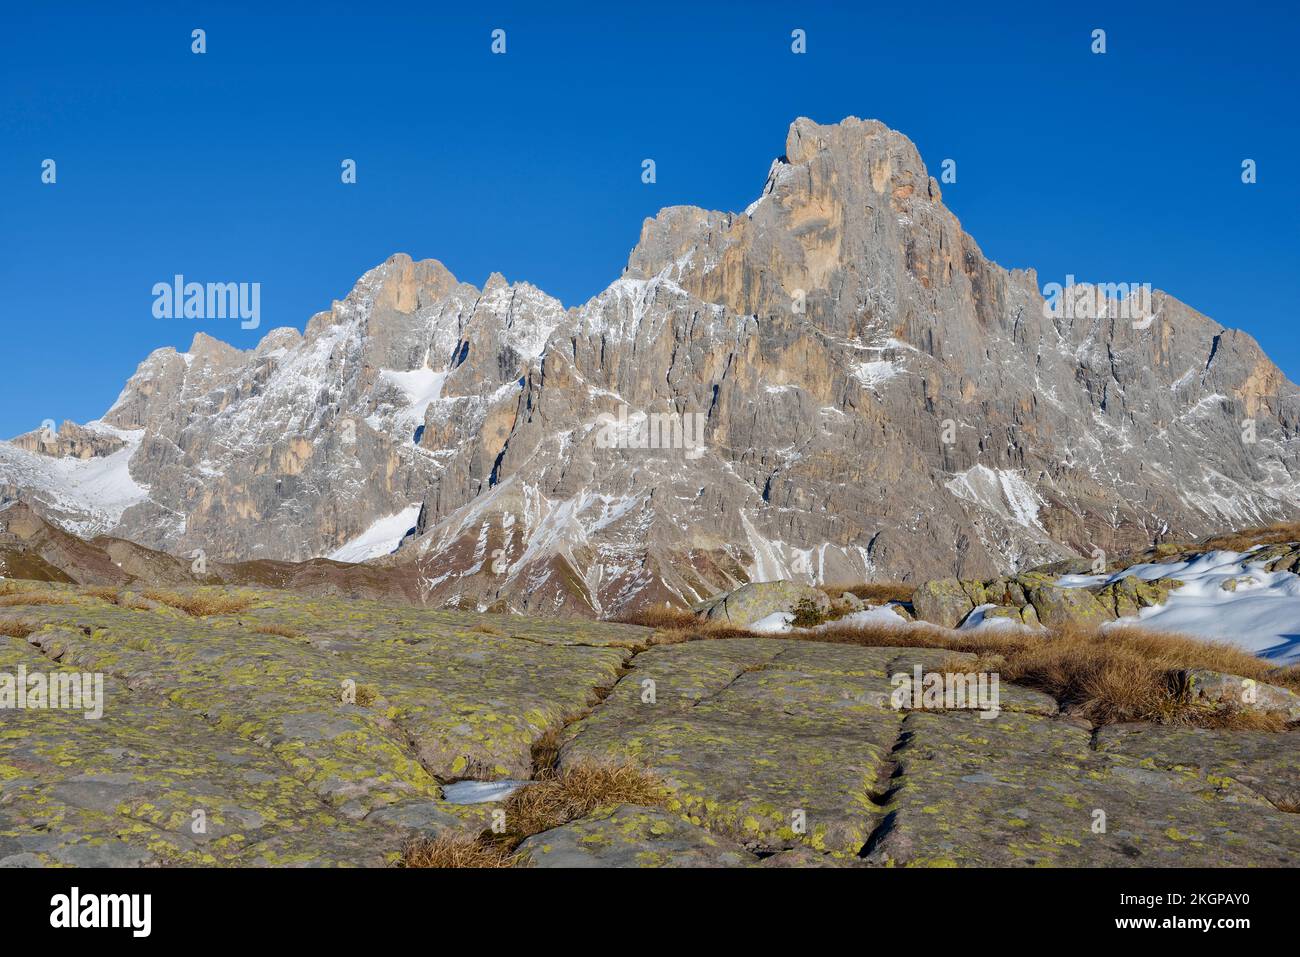 Italia, Trentino-Alto Adige, veduta del Cimon della pala sulle Dolomiti Foto Stock